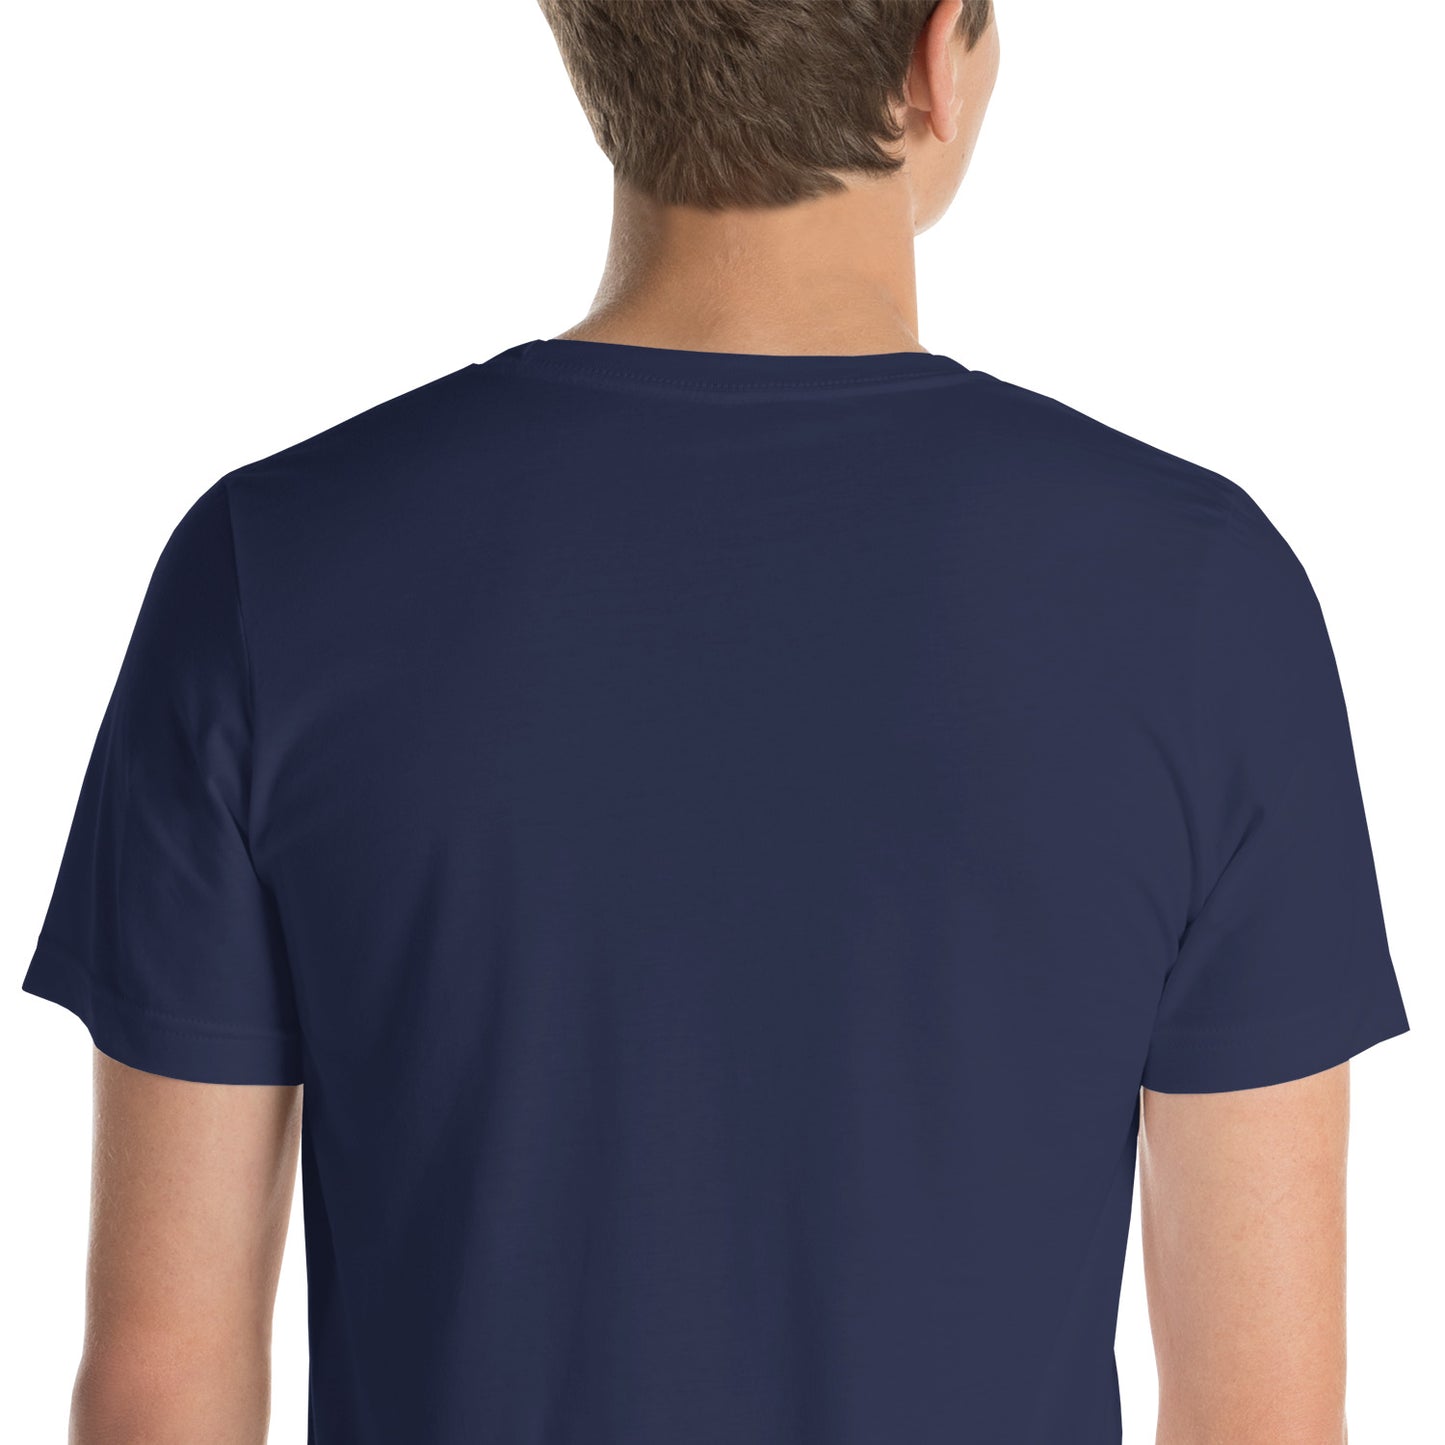 The Kutlass Krew - T-Shirt